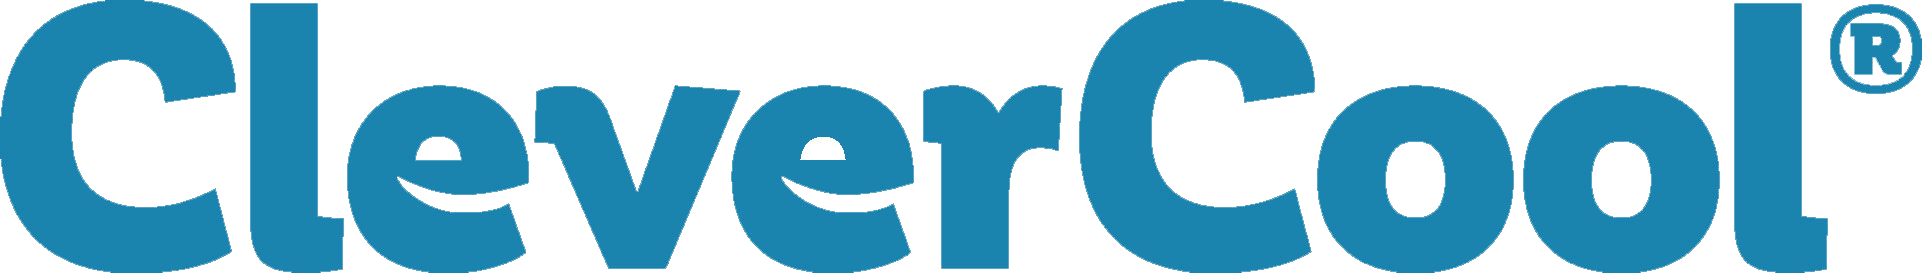 clevercool logo